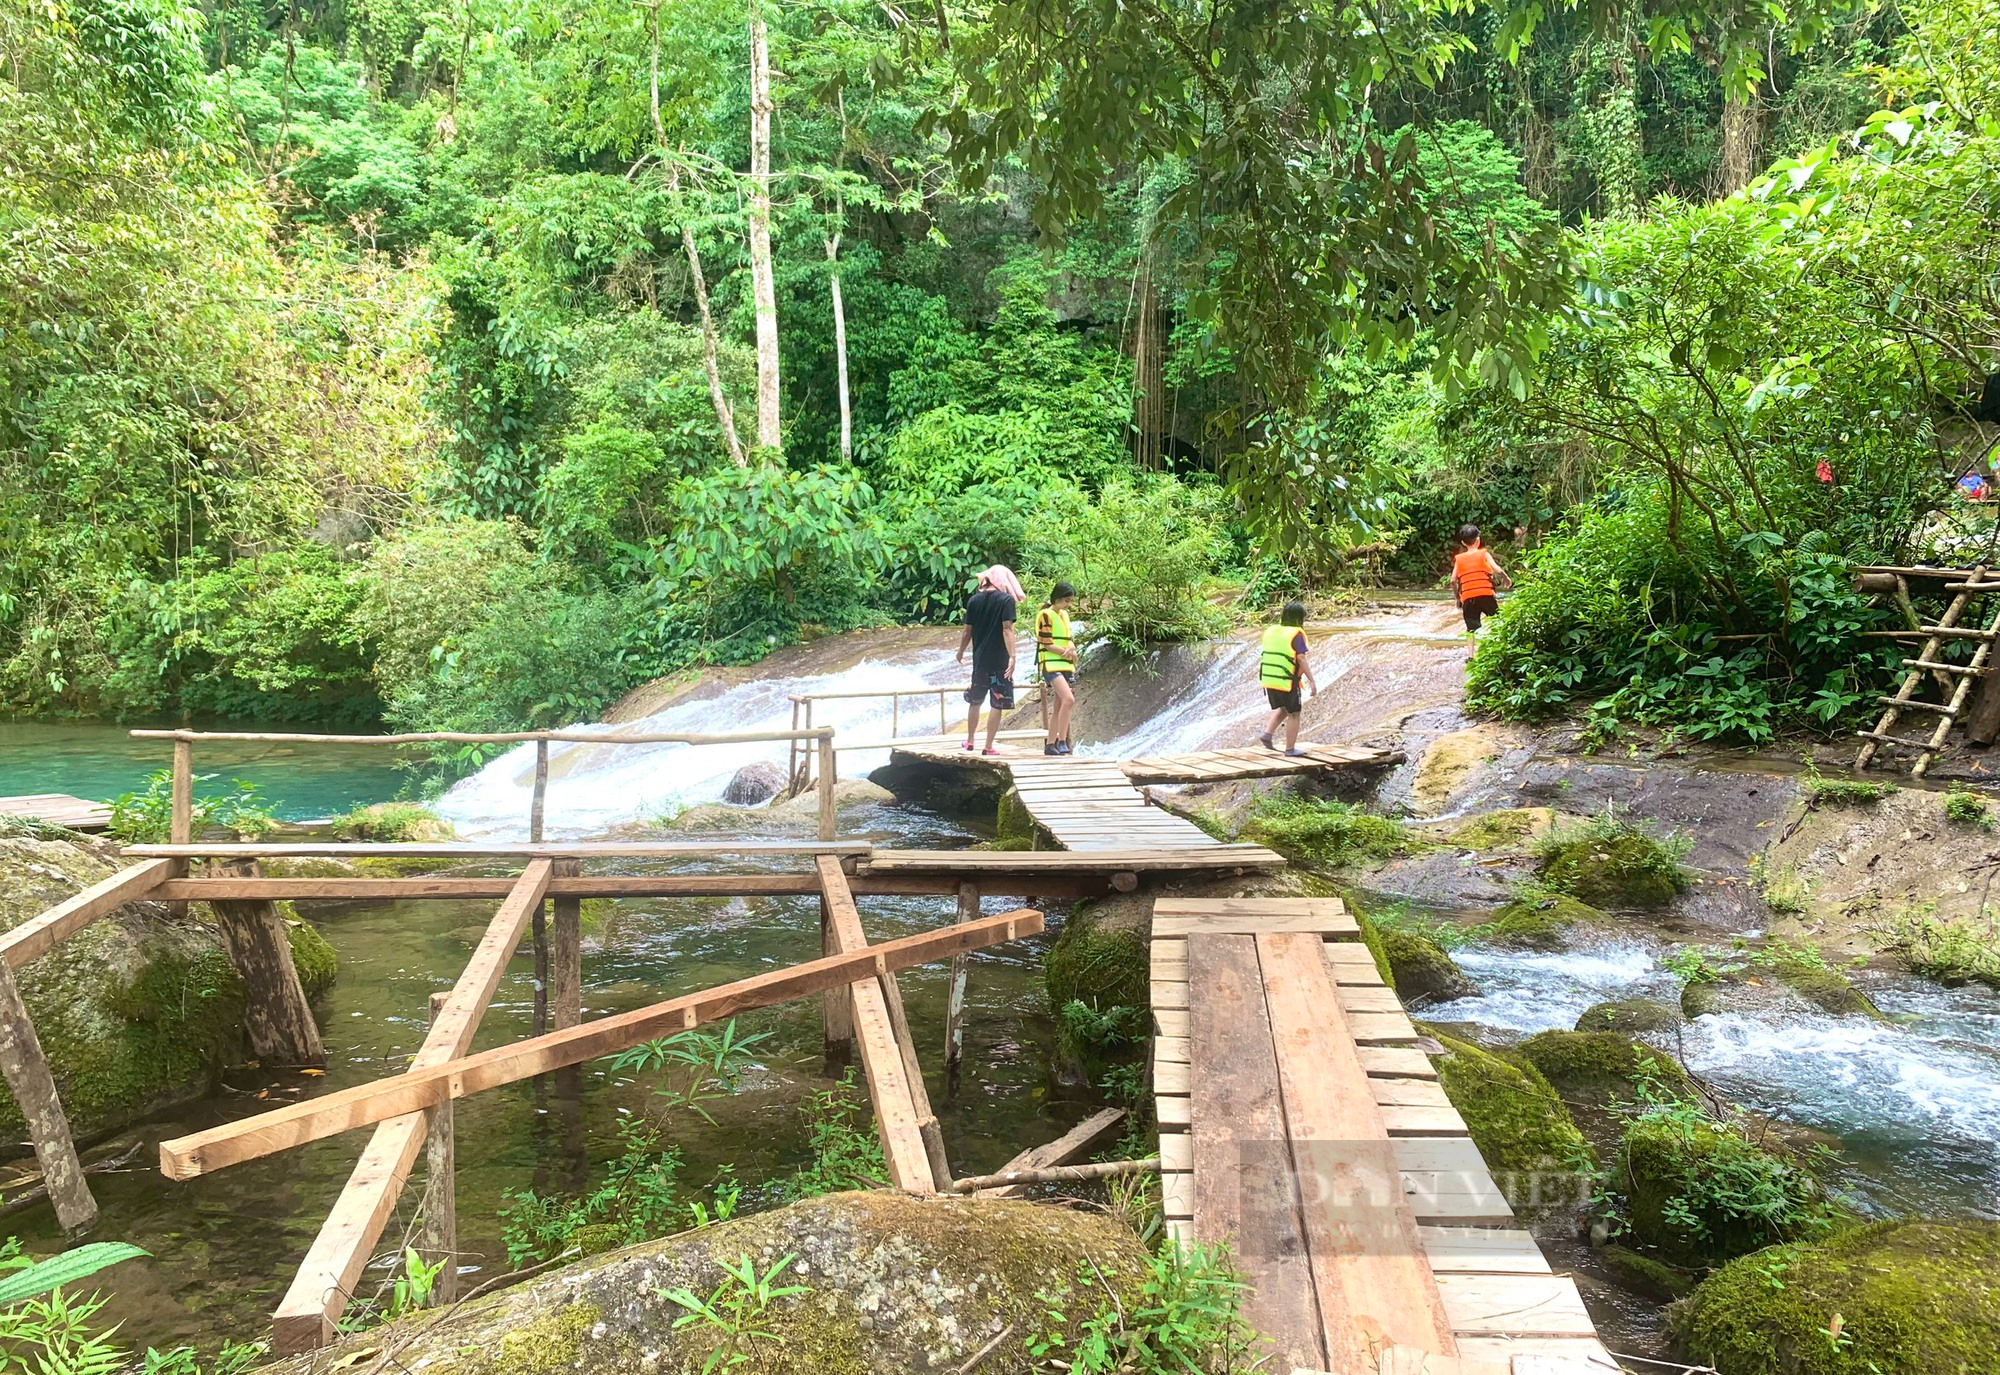 Phớt lờ chỉ đạo của Chủ tịch UBND tỉnh Quảng Bình, khu vui chơi giải trí không phép giữa rừng vẫn ngang nhiên hoạt động - Ảnh 2.